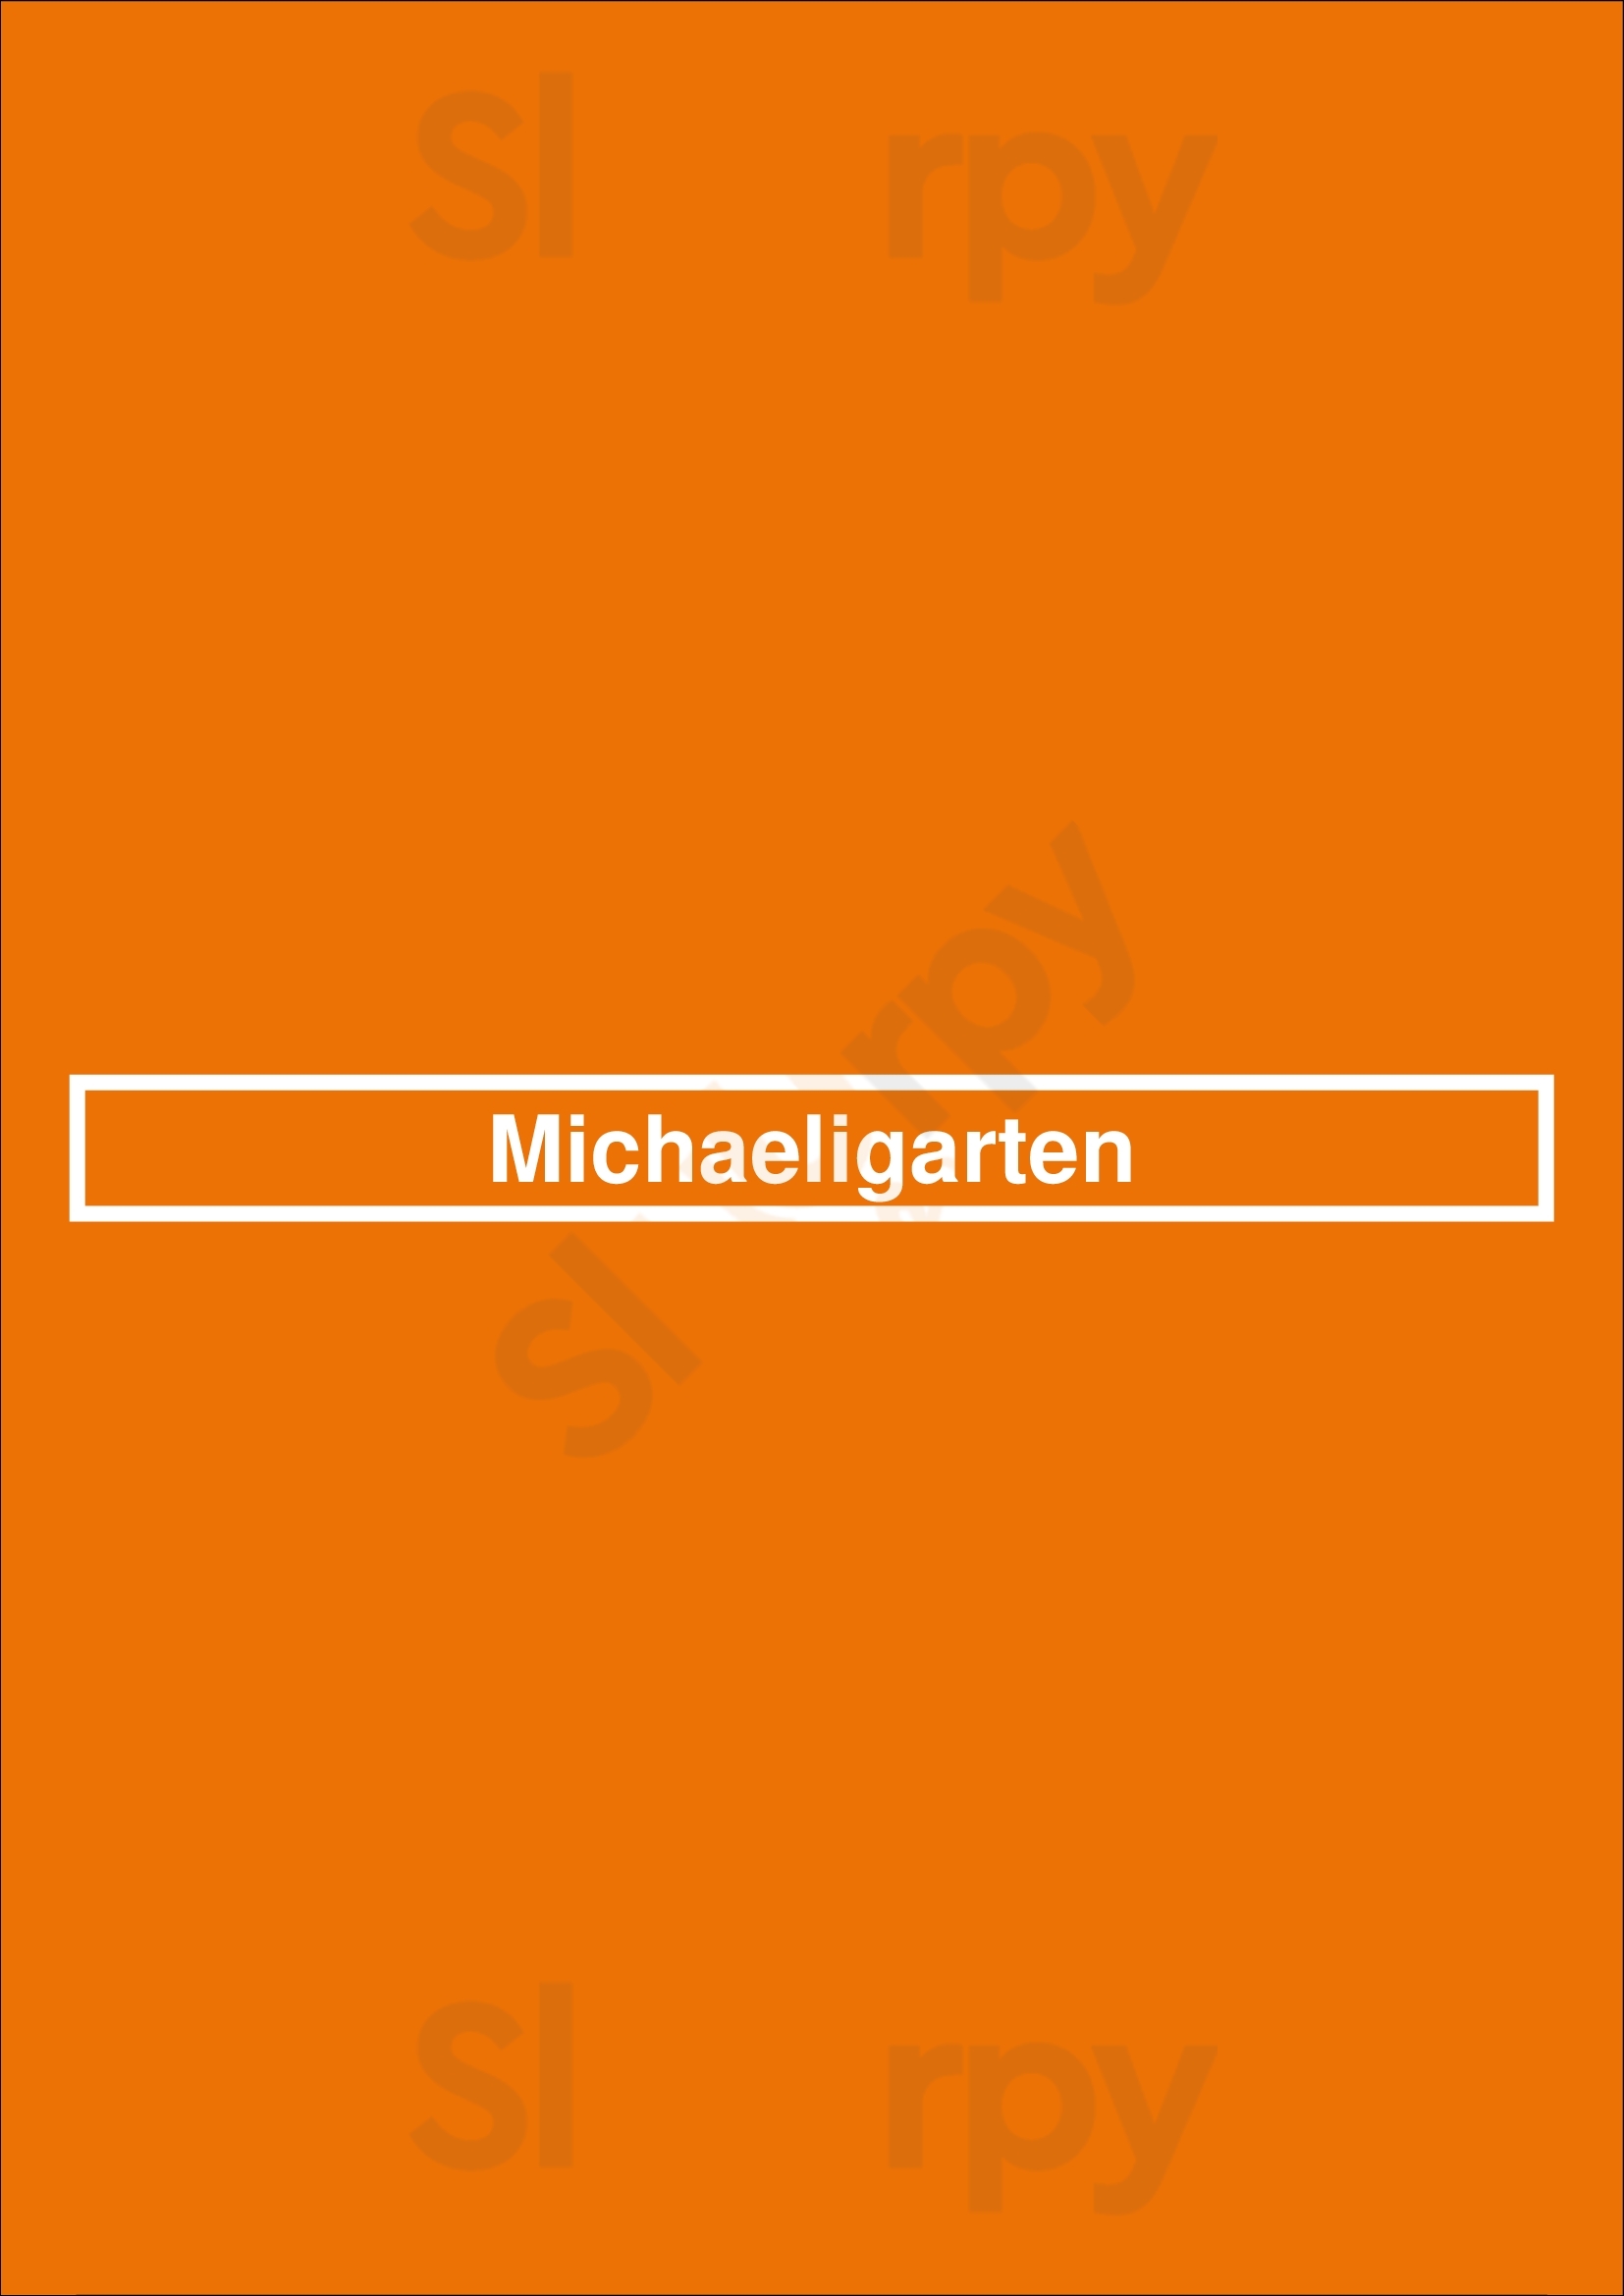 Michaeligarten München Menu - 1